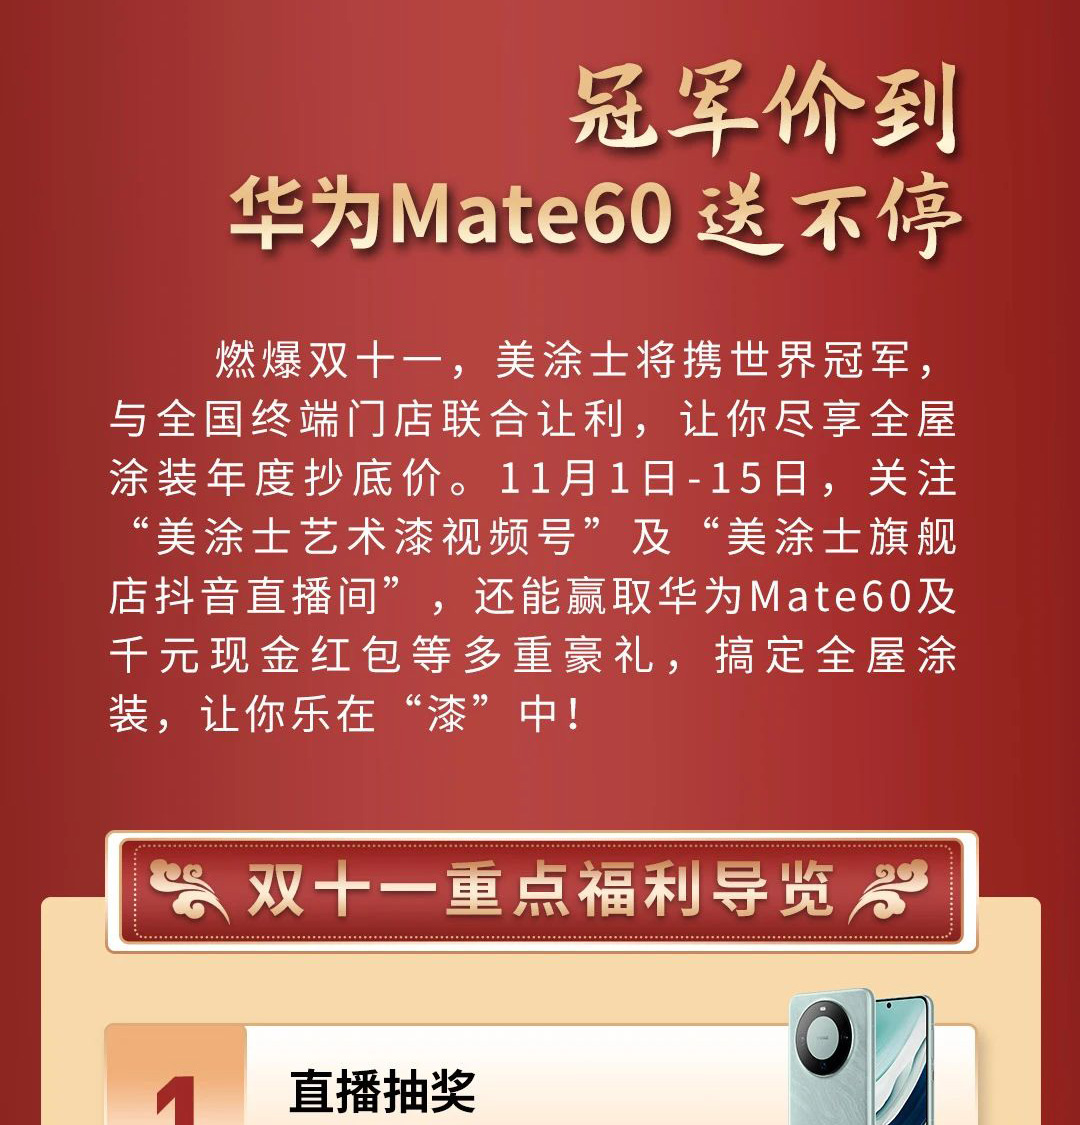 伟德betvlctor1946(中国游)·官方网站